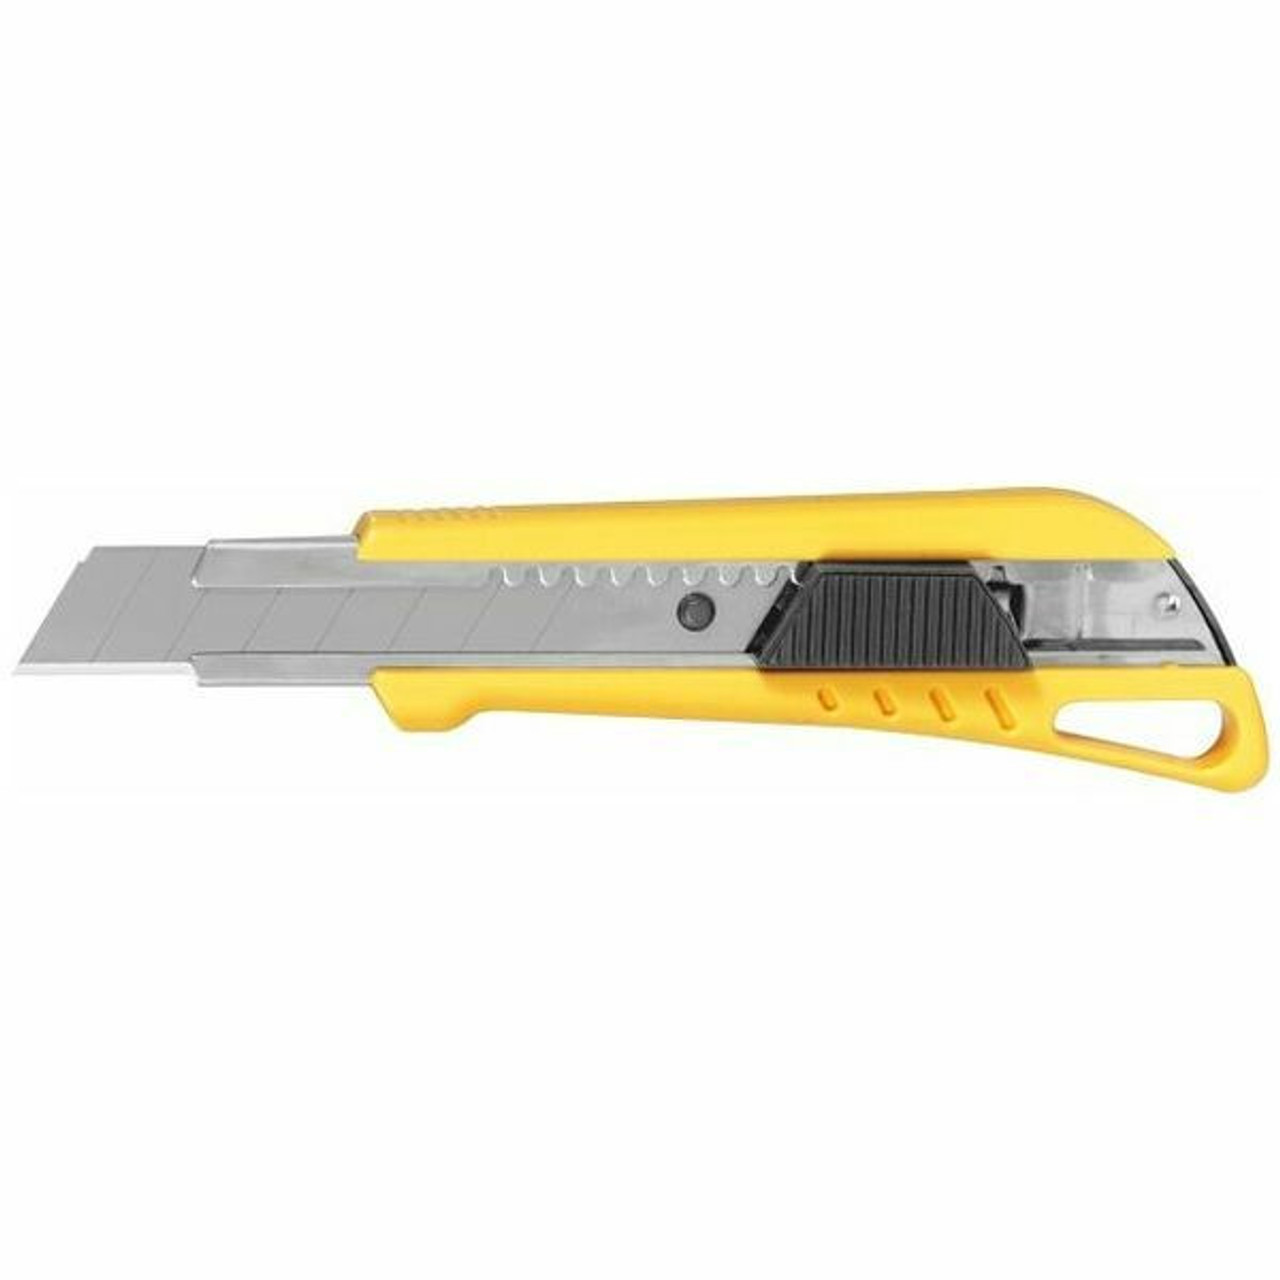 Tajima Box Cutter Knife with Slide Lock 3 Blades 18 mm Width